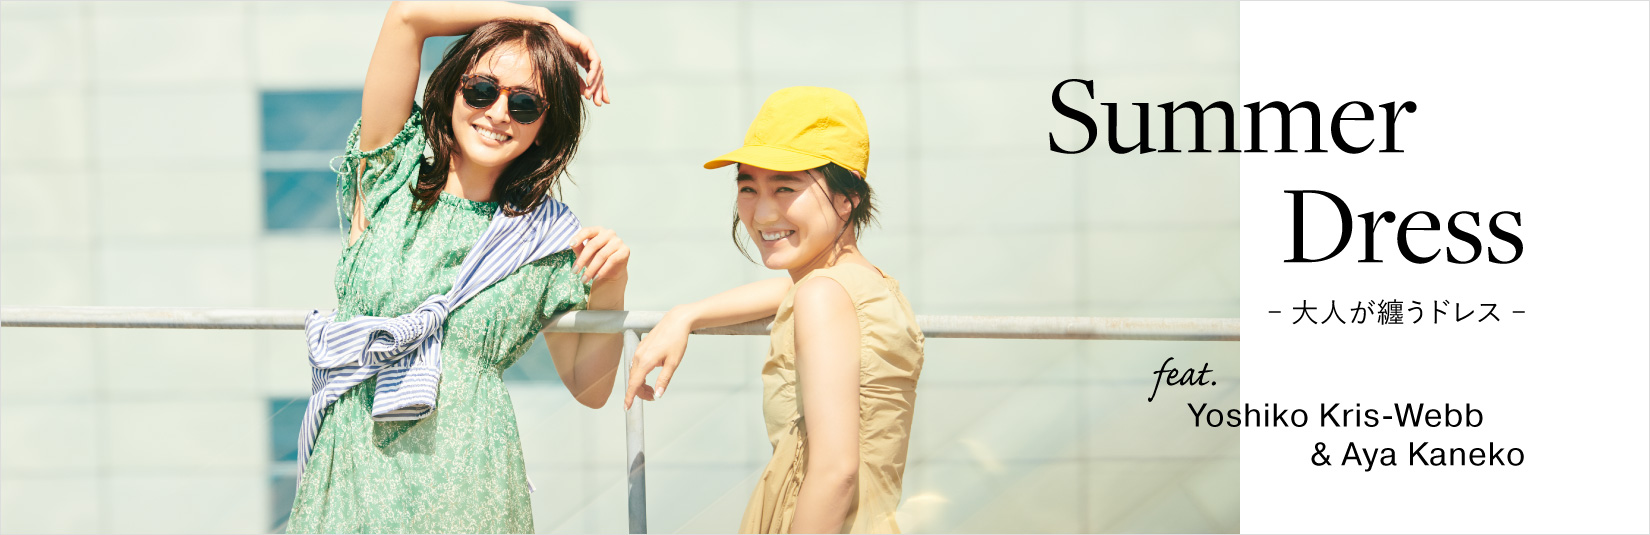 Summer Dress -大人が纏うドレス- feat.Yoshiko Kris-Webb＆Aya Kaneko